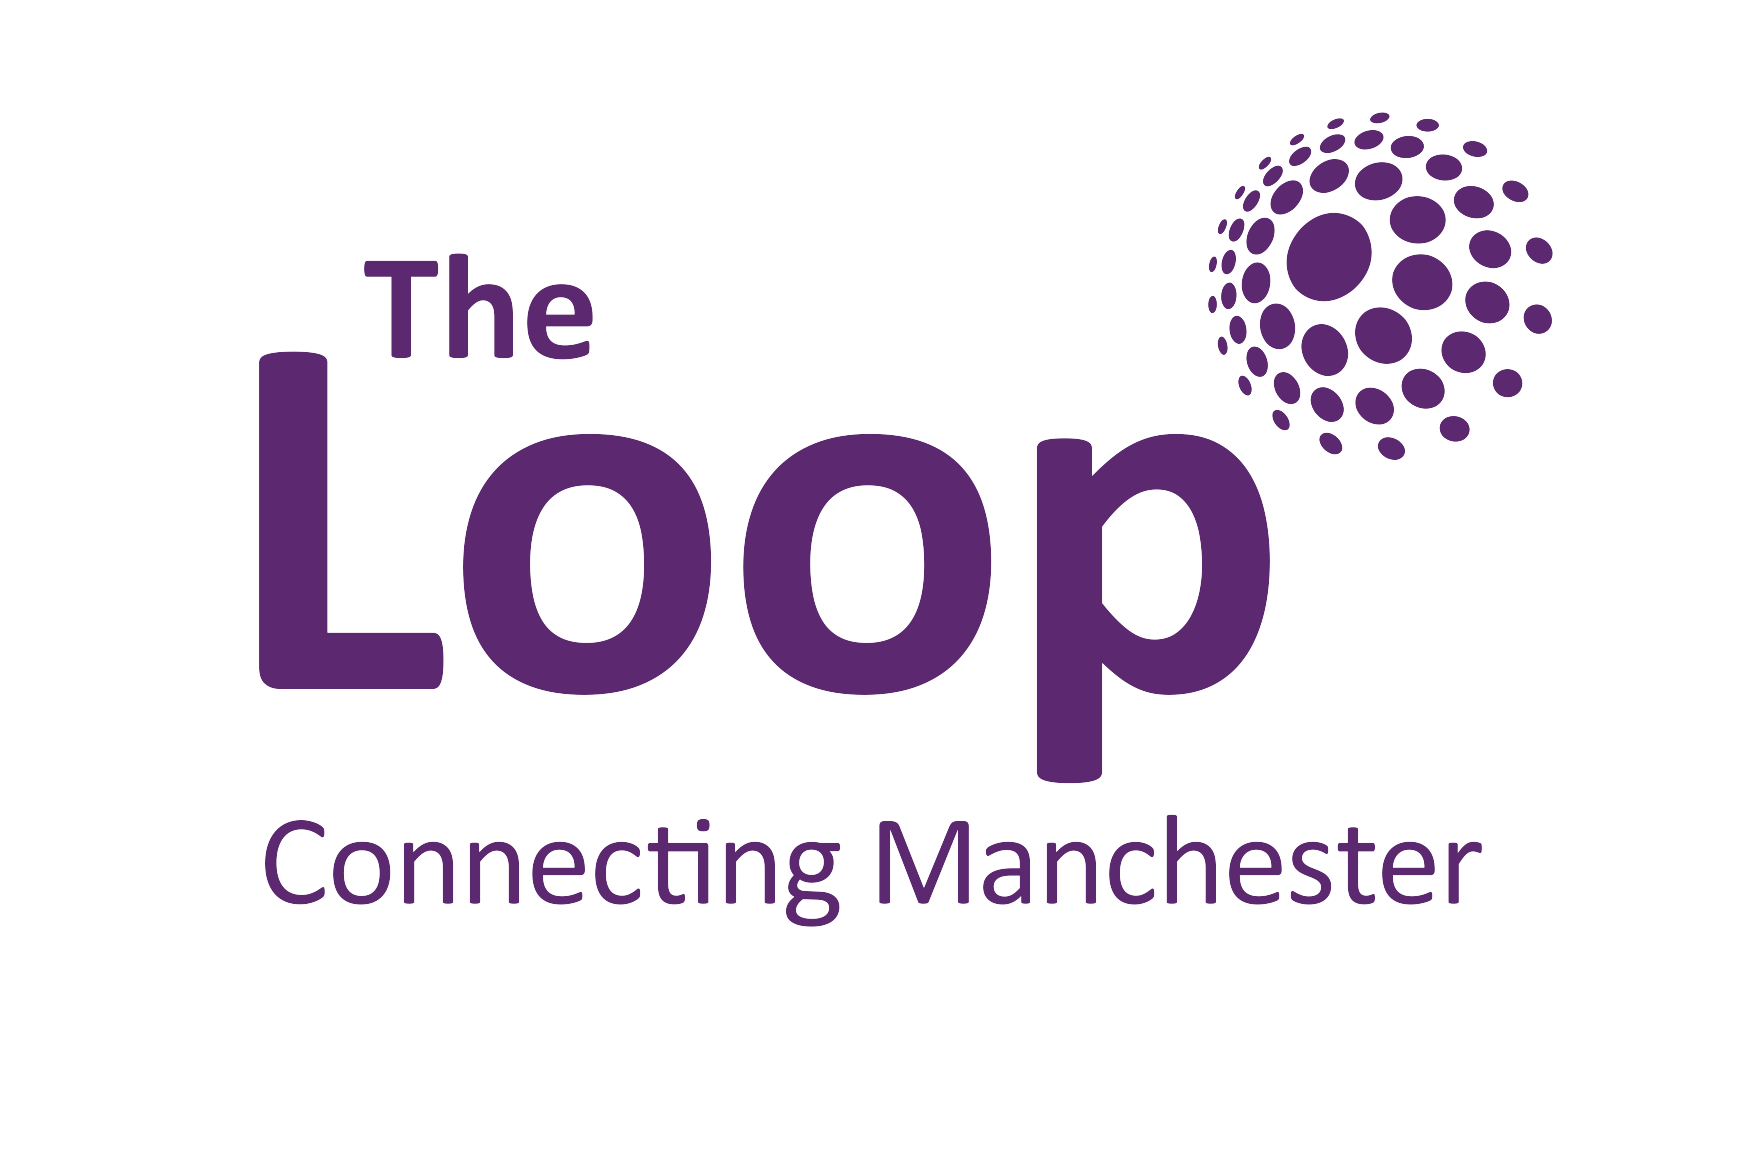 The Loop Logo